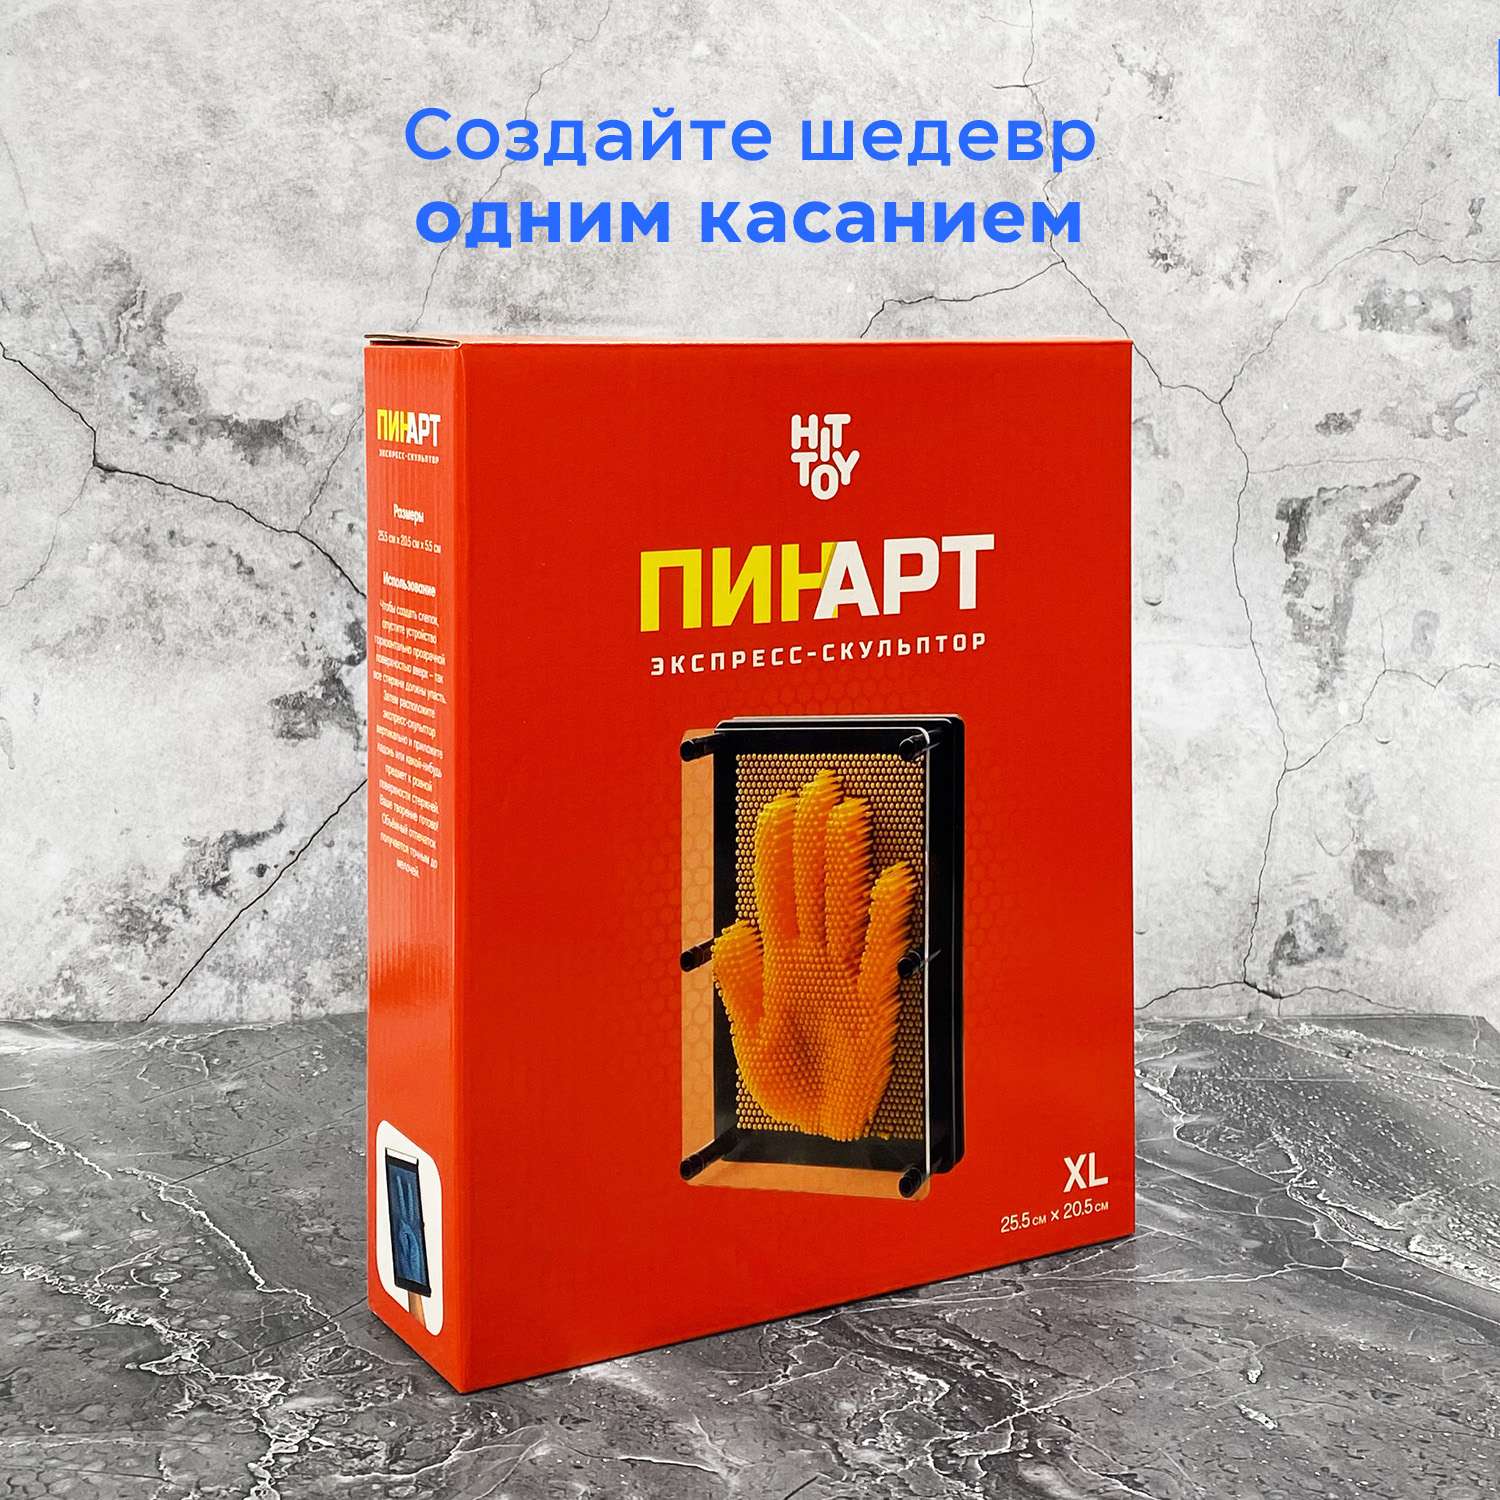 Игрушка-антистресс HitToy Экспресс-скульптор Pinart Классик XL красный - фото 2